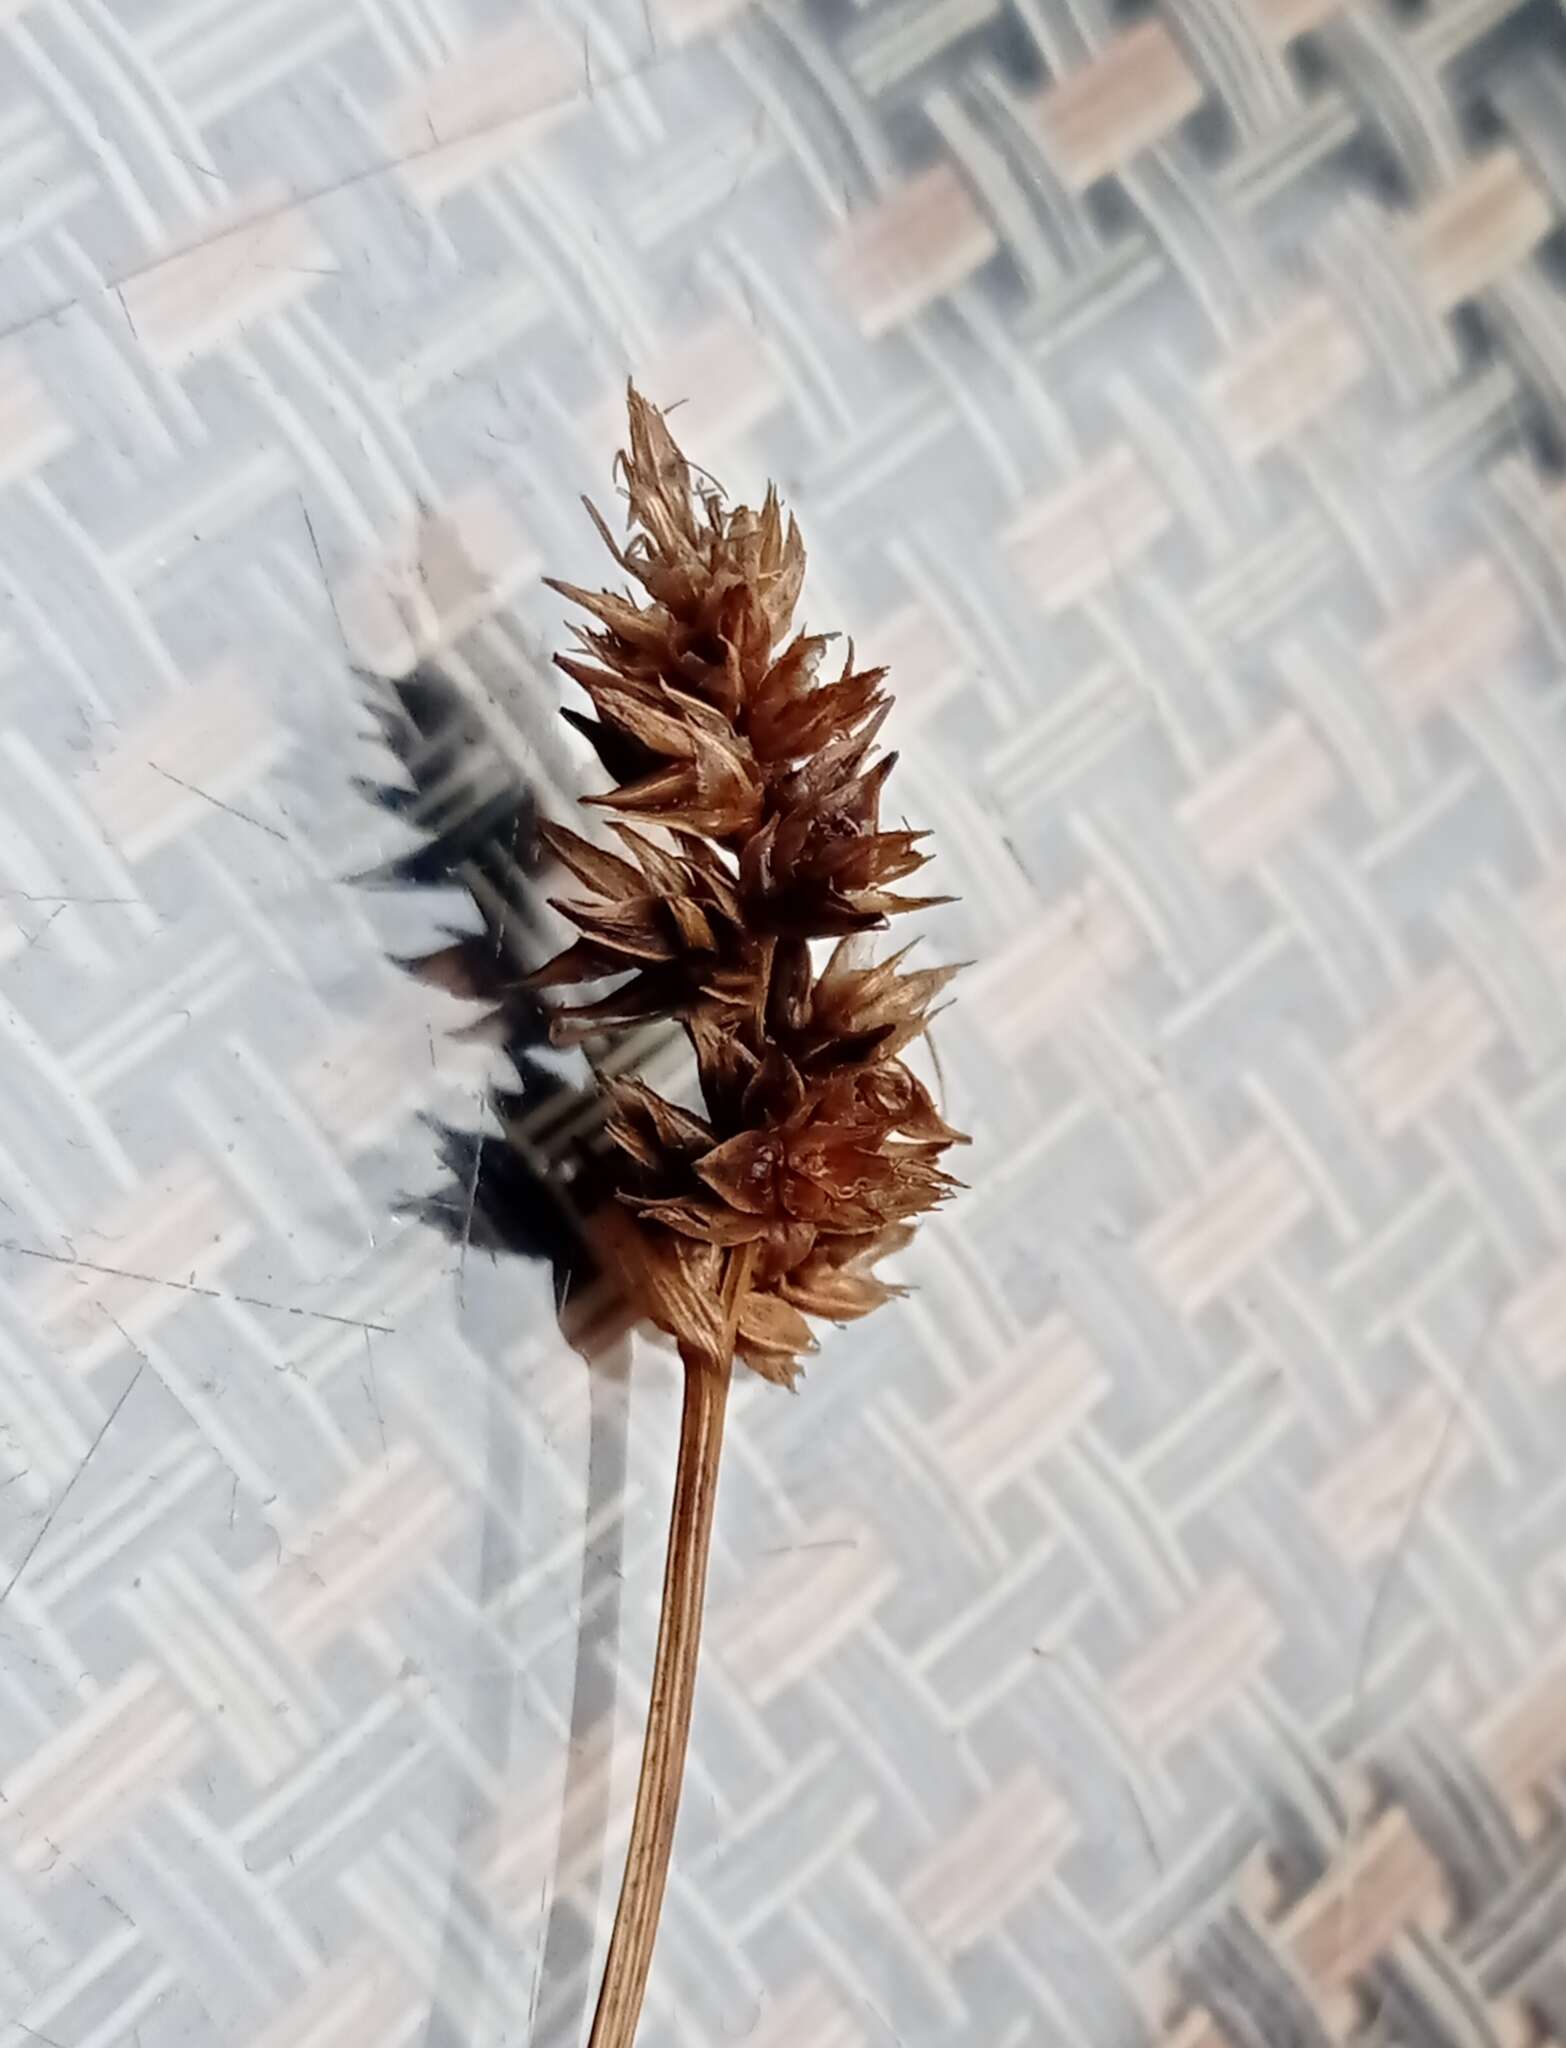 Image of Carex bonariensis Desf. ex Poir.